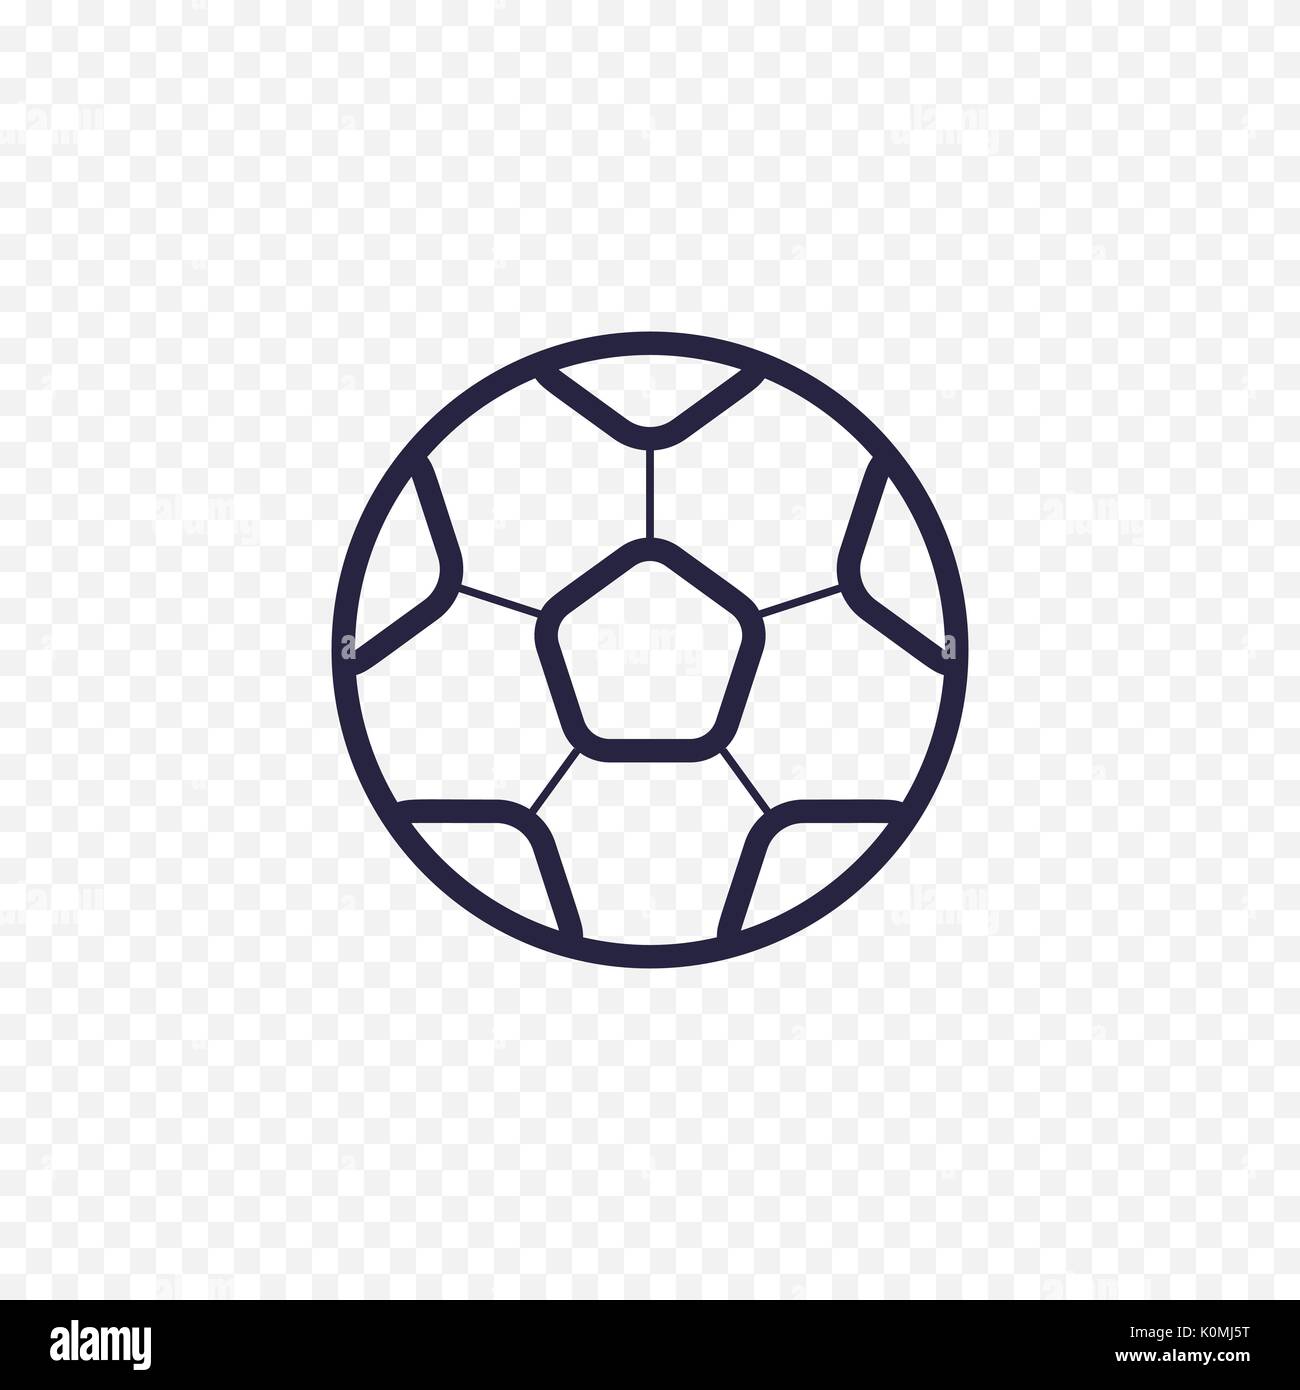 Pallone da calcio semplice icona linea. Gioco del calcio sottile segni lineare. Profilo sport concetto semplice per siti web, una infografica, applicazioni mobili. Illustrazione Vettoriale